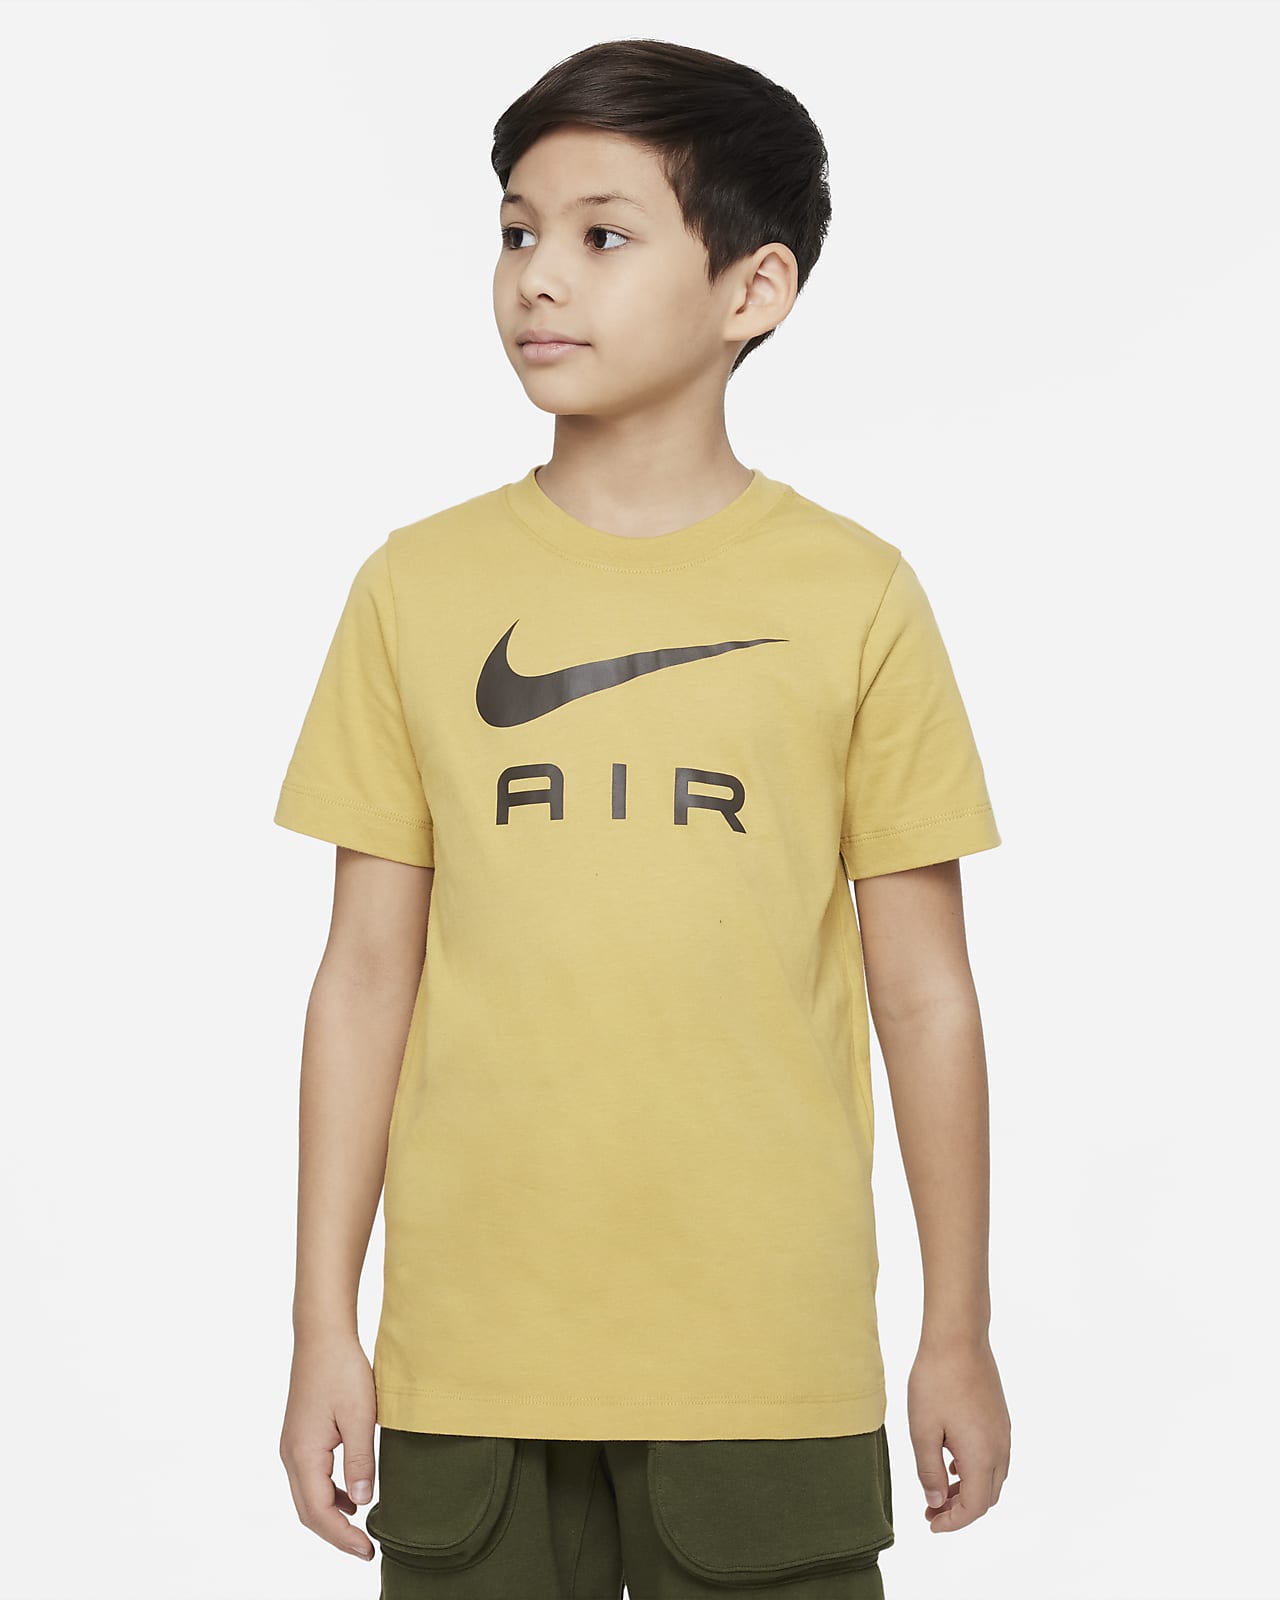 Conform Wreck sæt ind Nike Sportswear-T-shirt til større børn (drenge). Nike DK